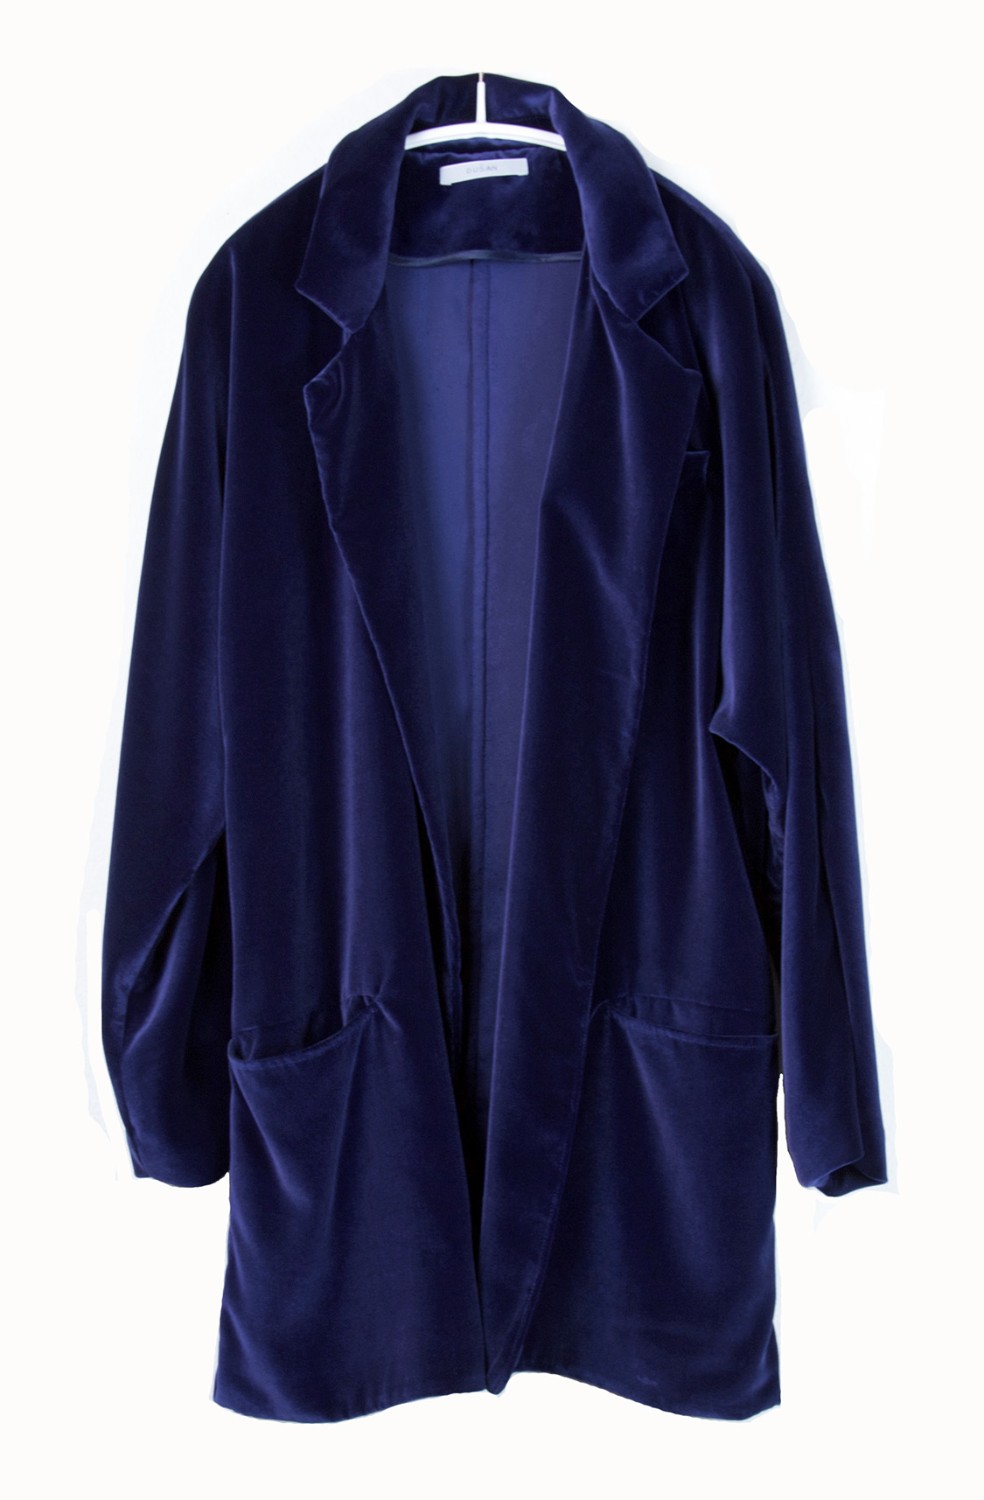 shop Dusan  Giacche: Giacca Dusan in velluto, blu elettrico, stile da camera, tasche davanti, senza chiusure. number 769